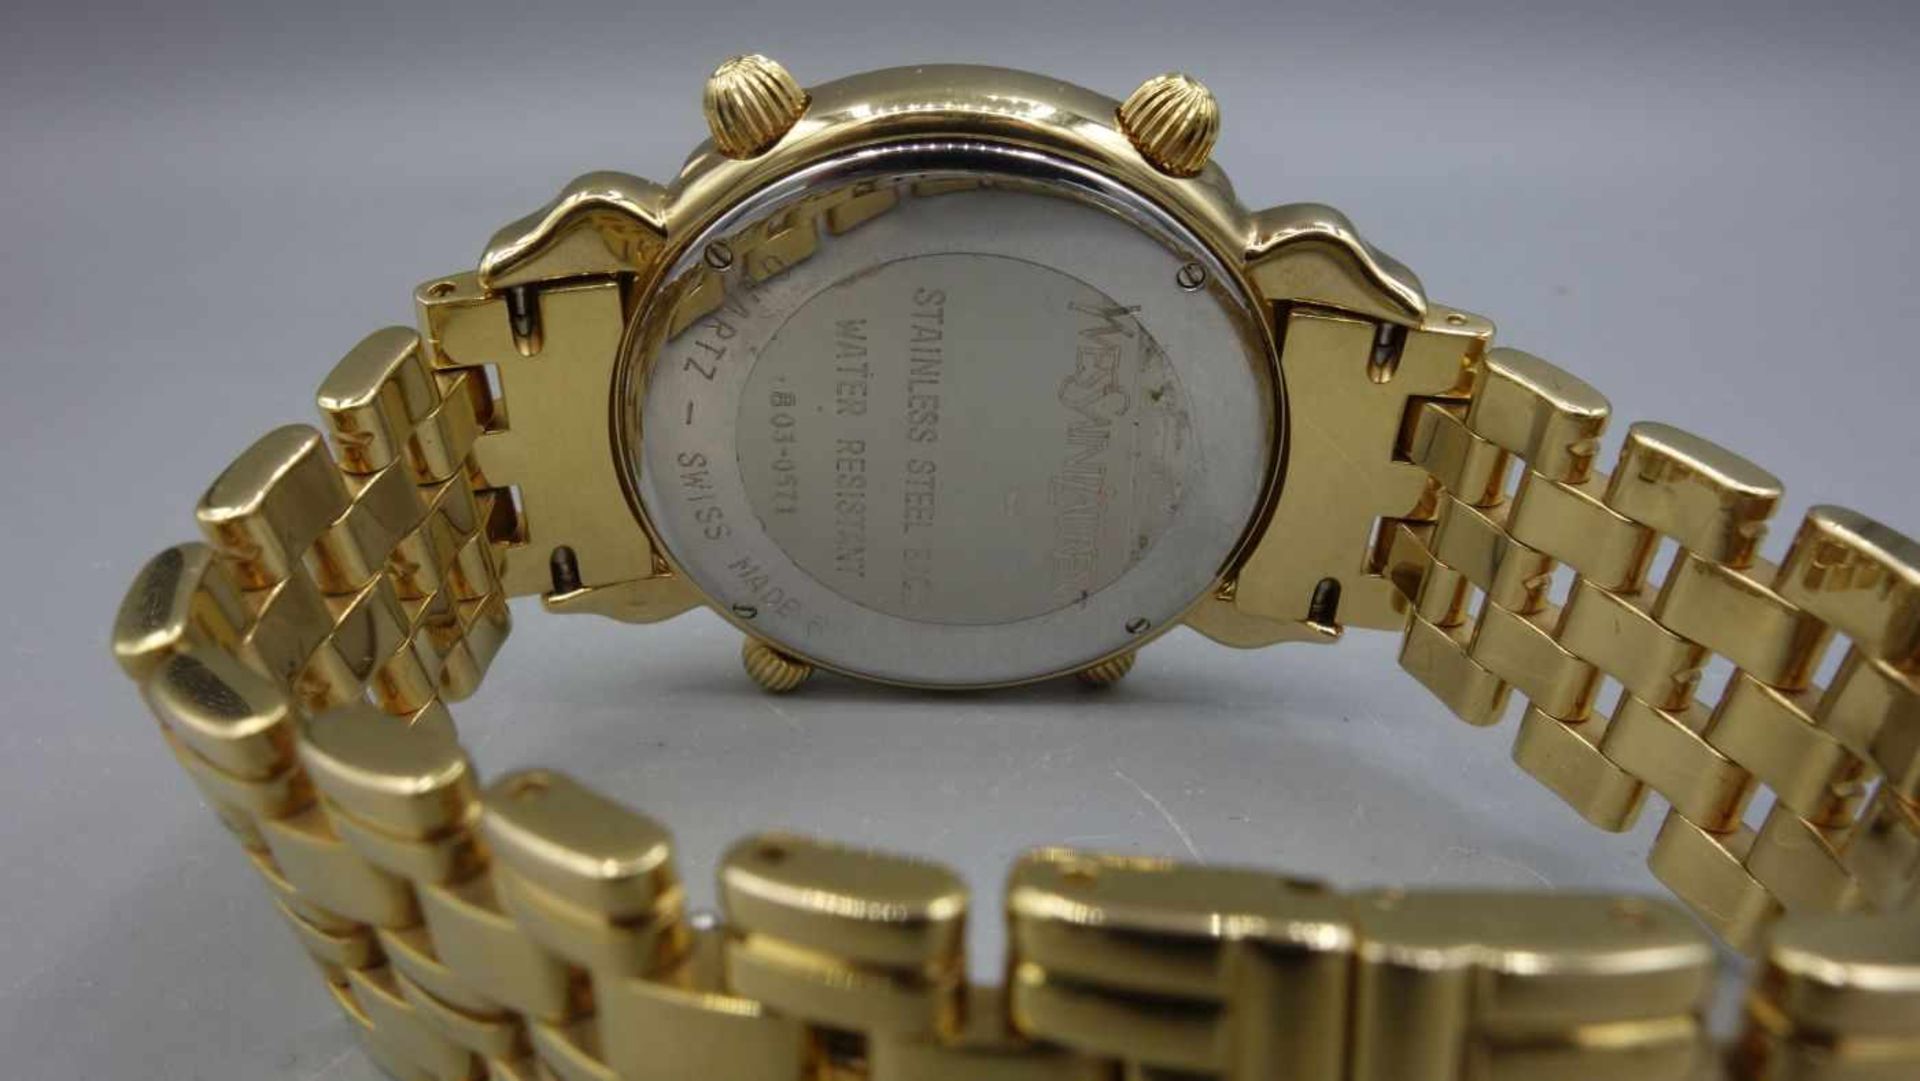 ARMBANDUHR / CHRONOGRAPH - YVES SAINT LAURENT / wristwatch, Quartz. Uhr aus der Yves Saint Laurent - Image 6 of 7